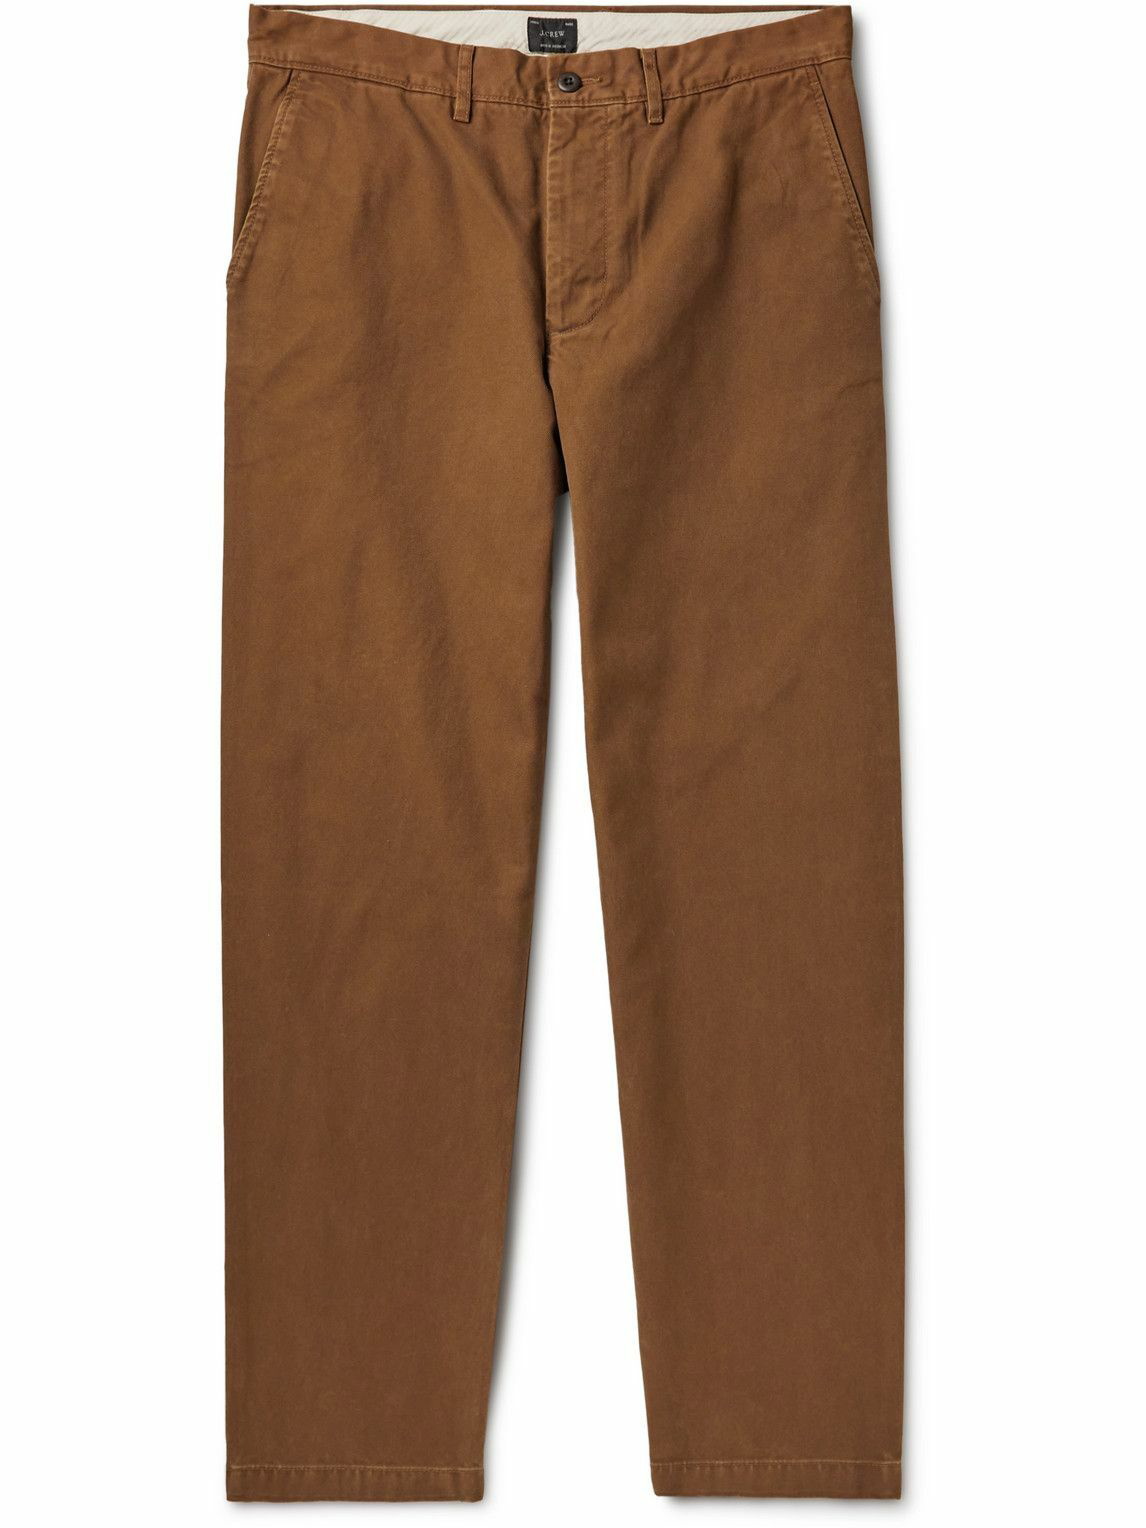 New men's XL J Crew slim corduroy brown dock pants